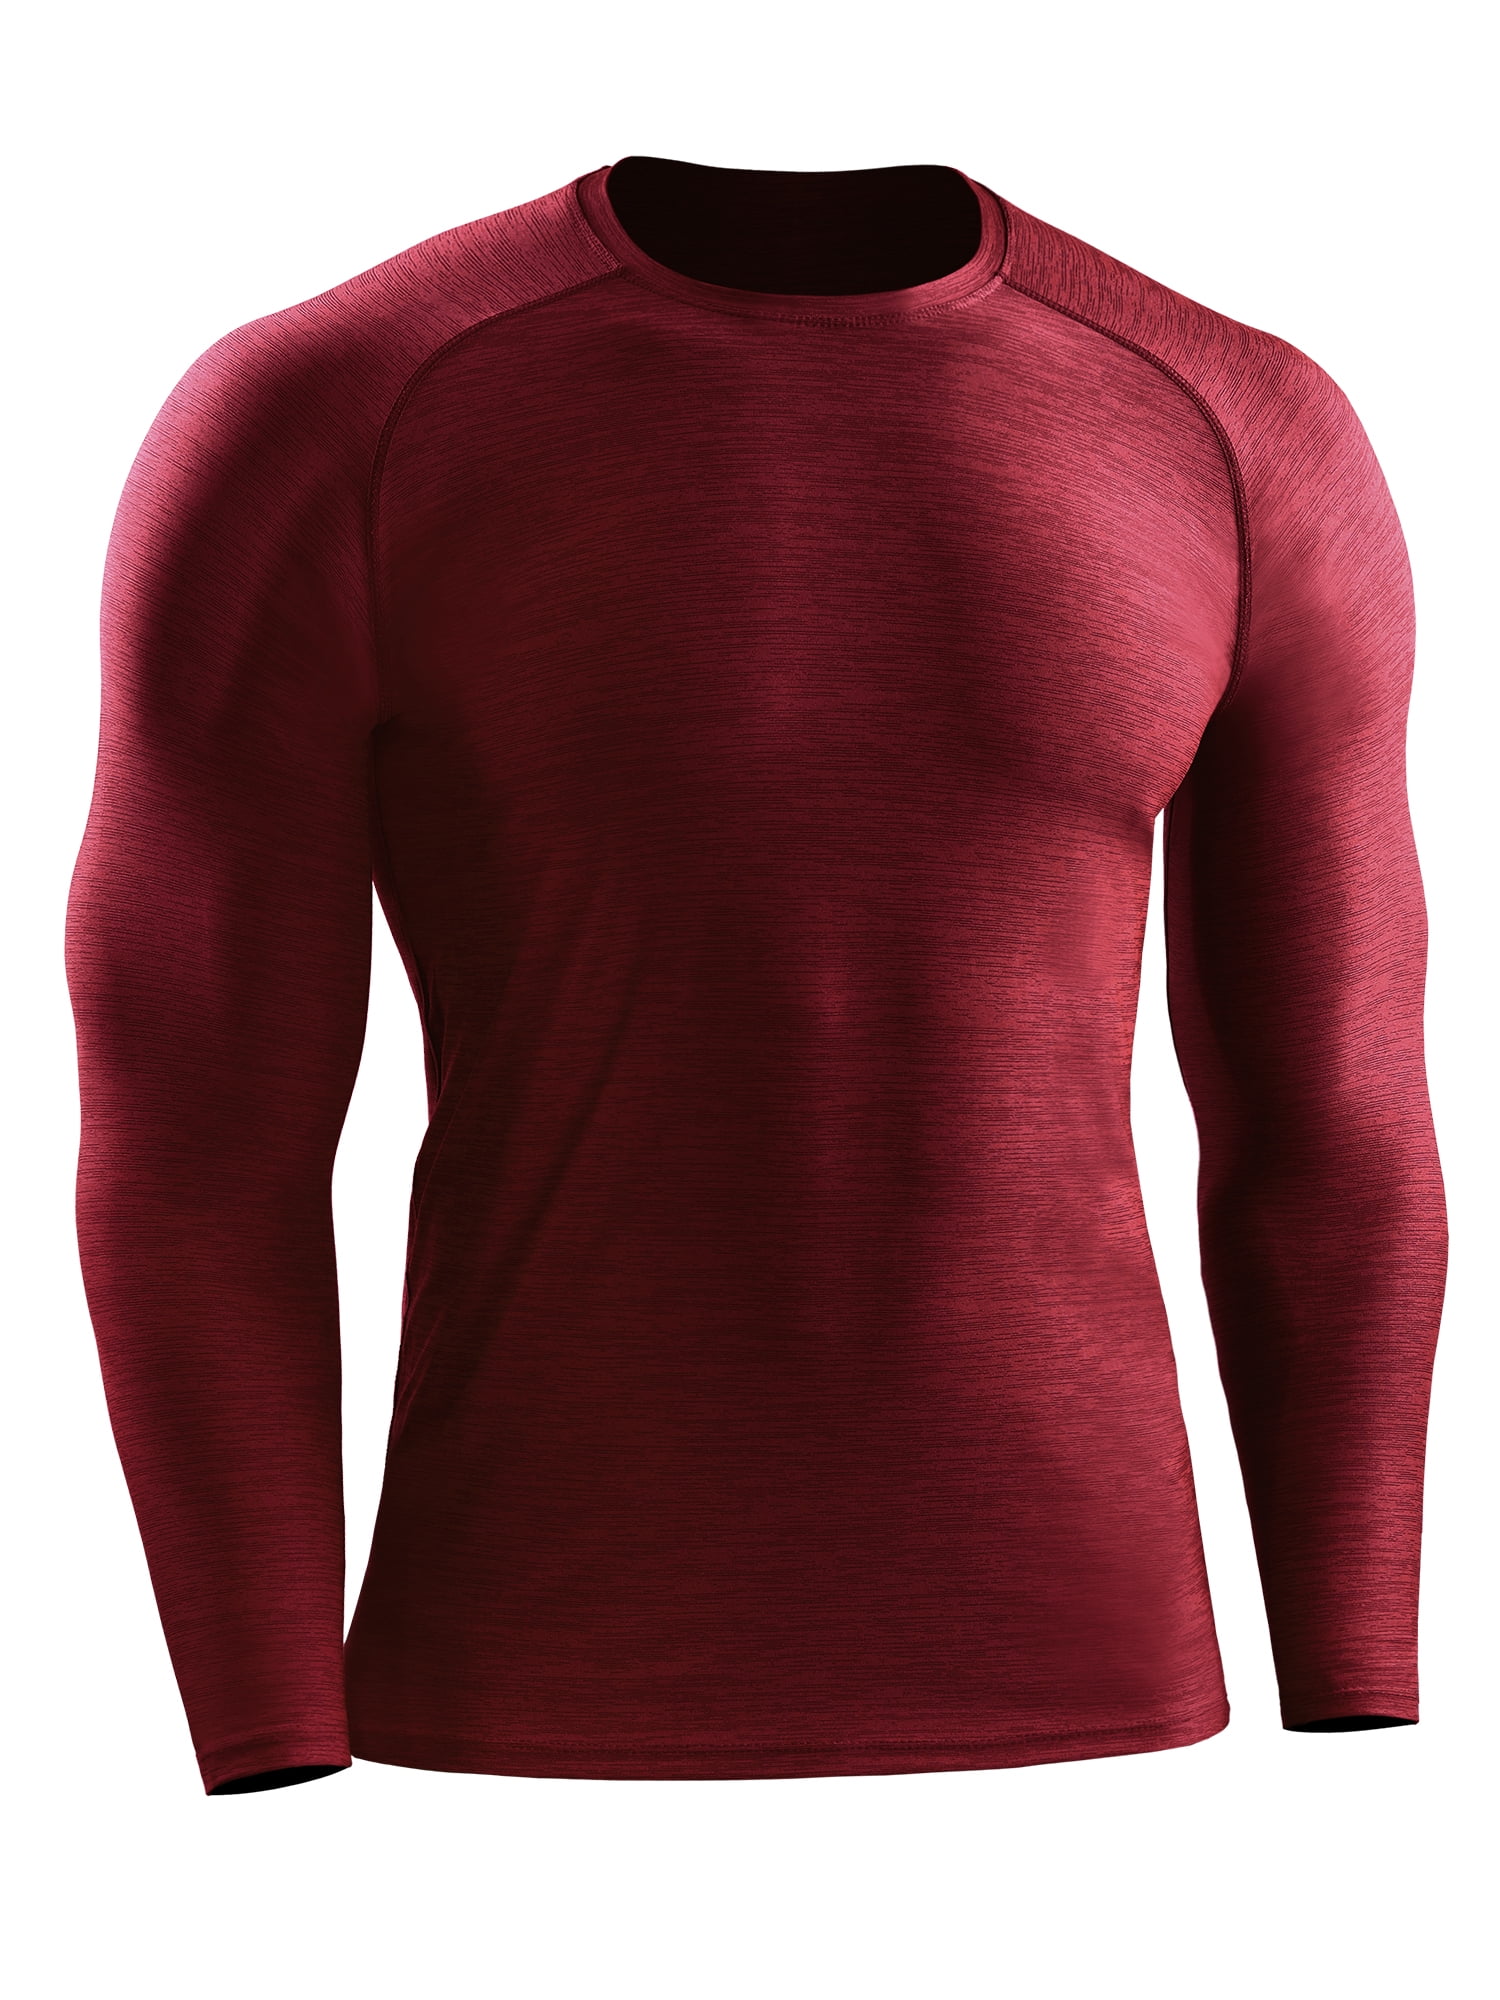 Herren Compression Fitness T-Shirt Top Hose Sport Gym Jogging Functional